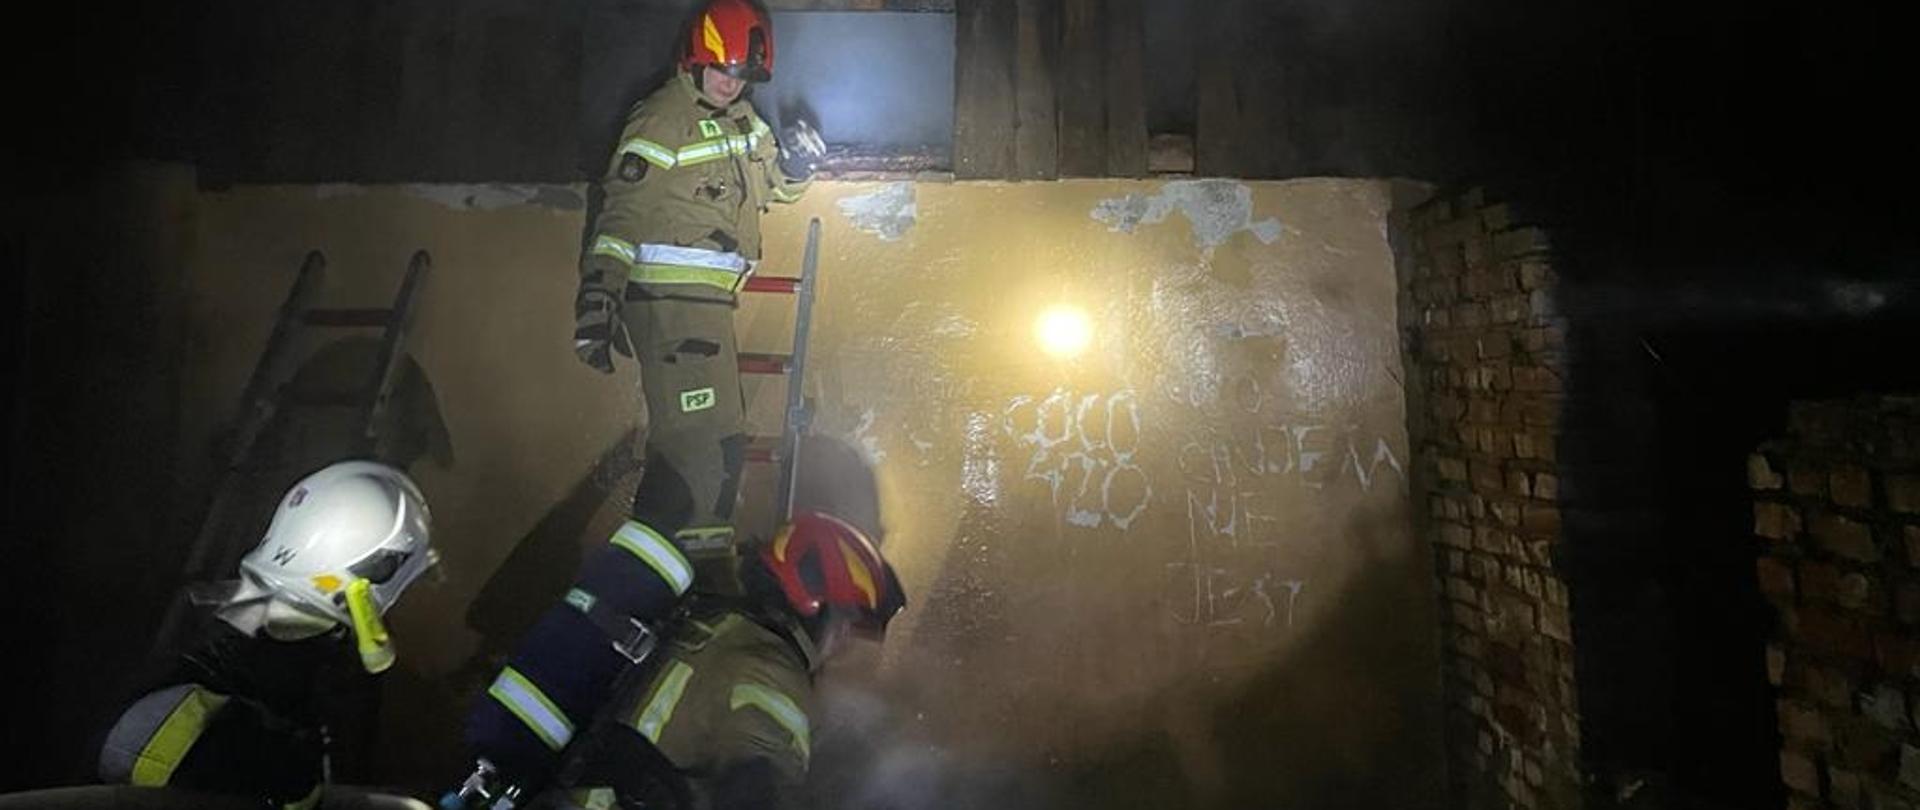 Zdjęcie zrobione nocą. Na ścianie budynku oparta drabina, na drabinie strażak w mundurze bojowym i czerwonym hełmie. Na dole jeszcze dwóch strażaków.